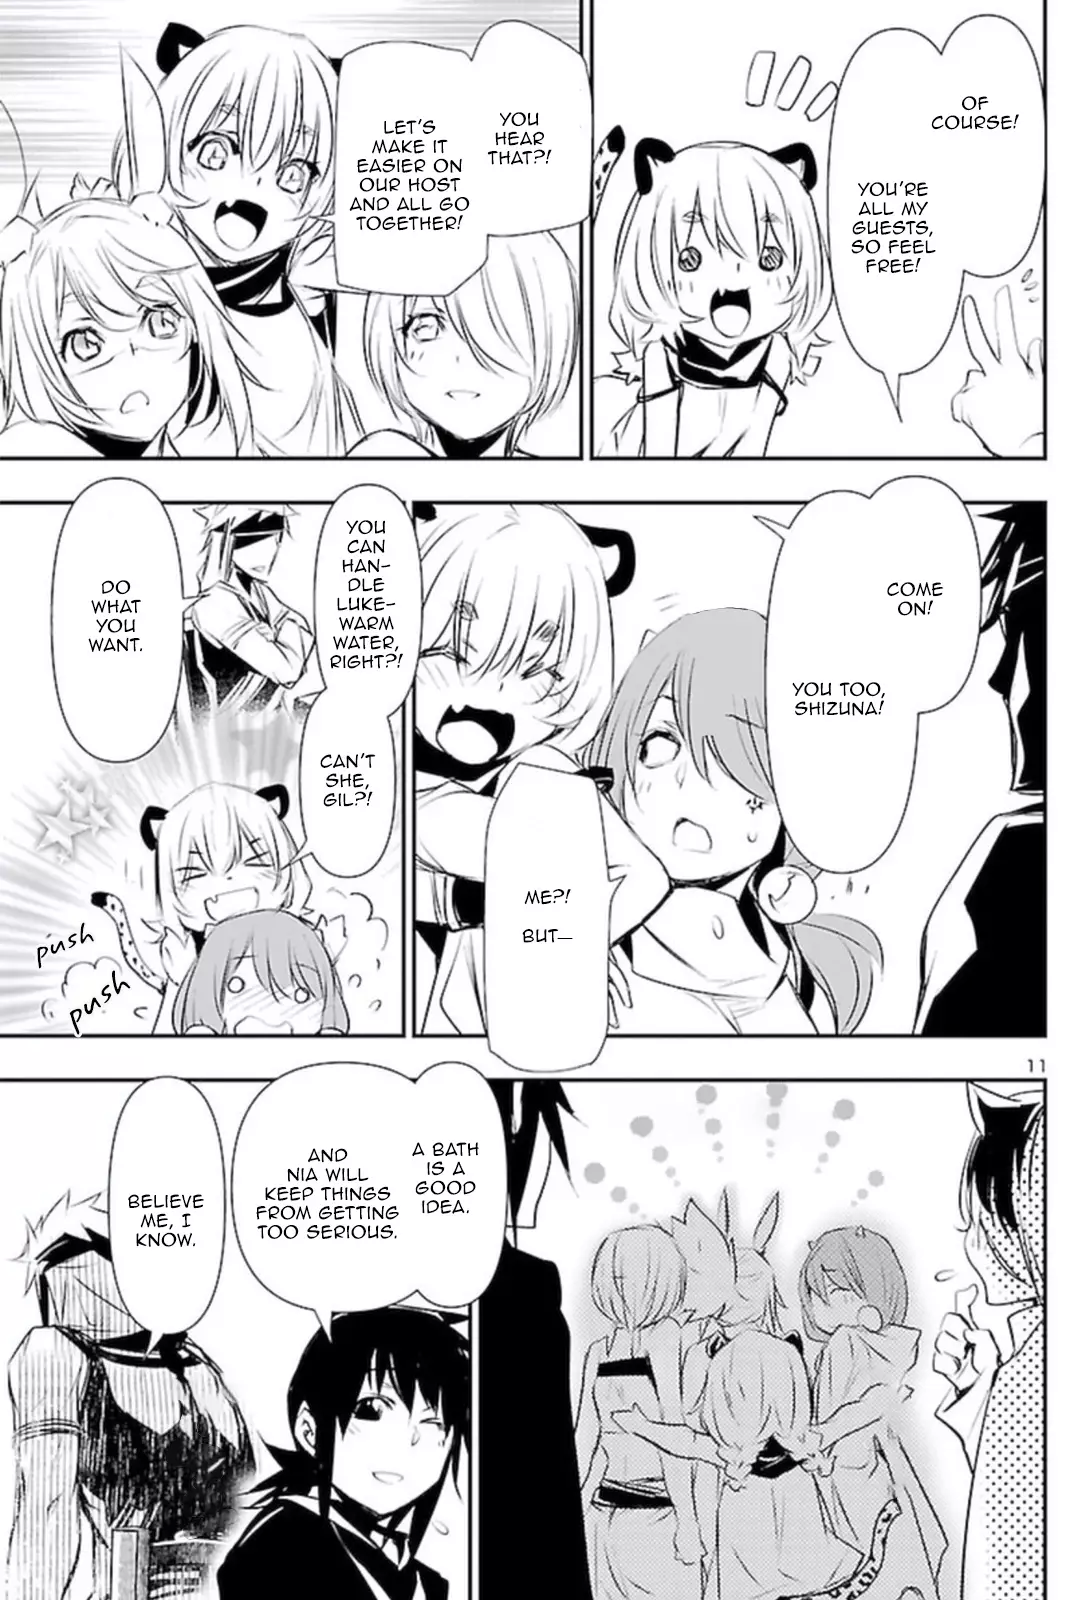 Shinju no Nectar - 66 page 10-804cdcd0